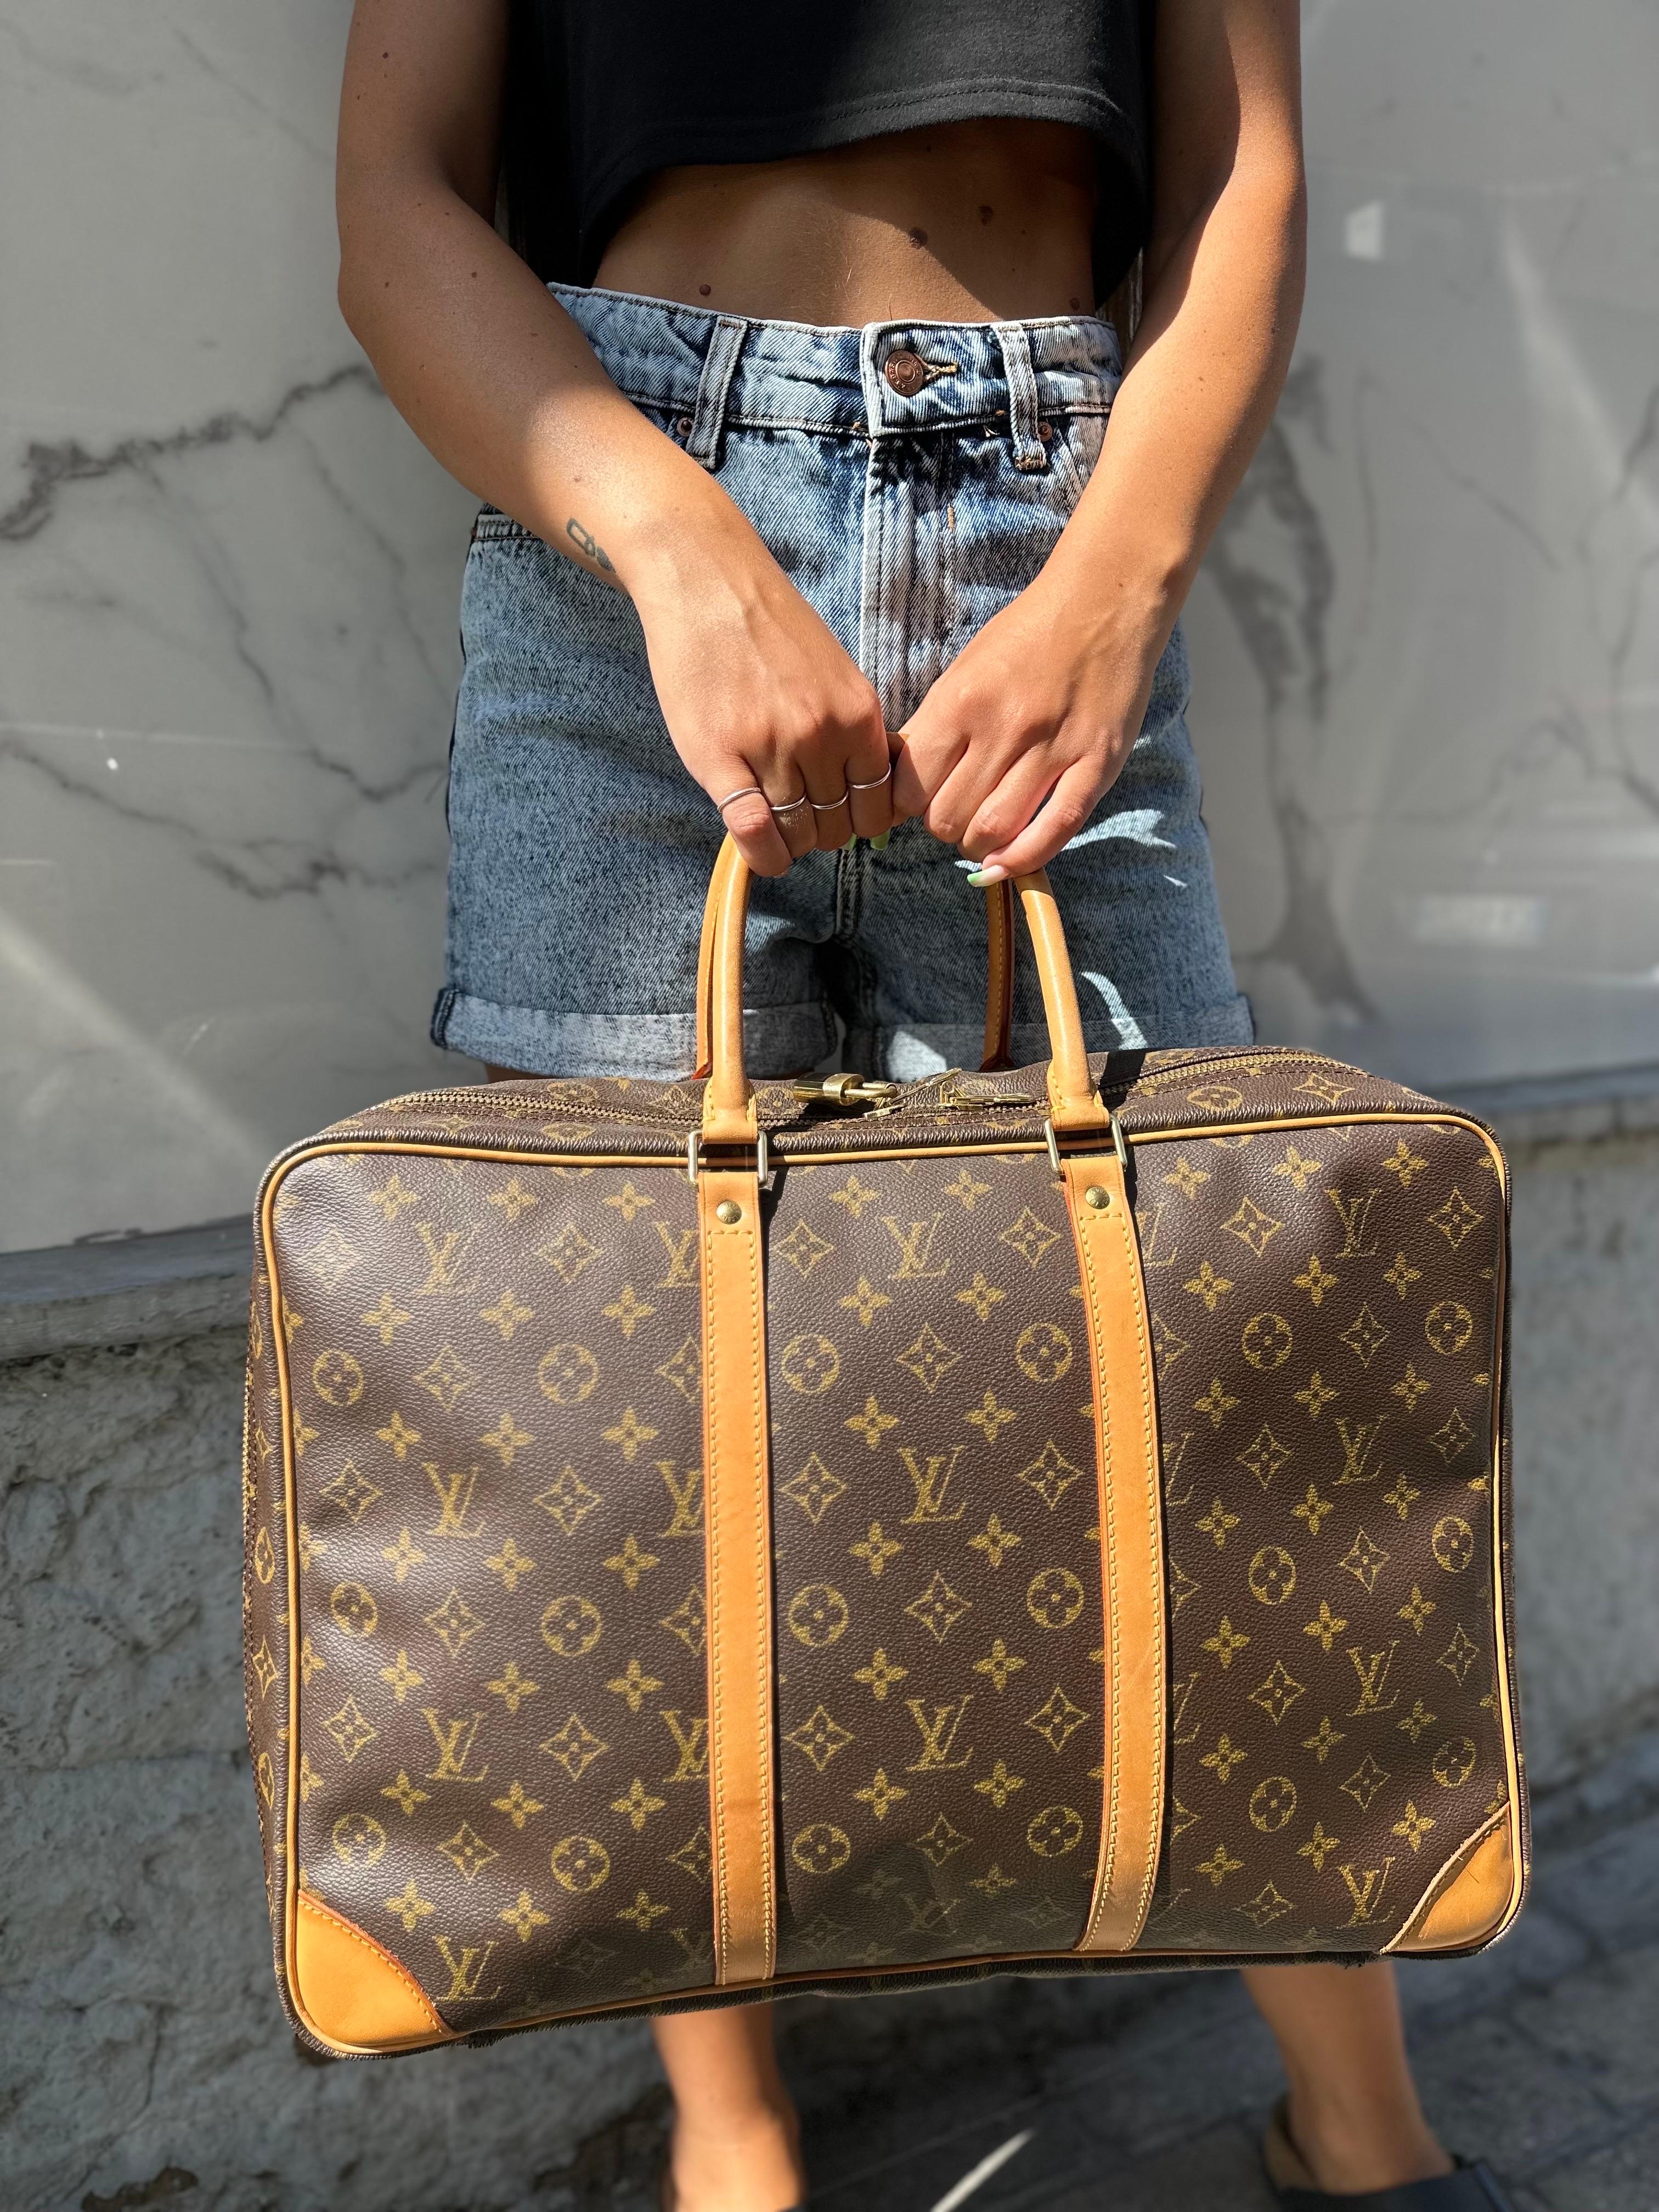 Borsa da viaggio firmata Louis Vuitton, modello Sirius, misura 45, realizzato in tela monogram con inserti in vacchetta e hardware dorati. Dotata di una chiusura con zip semicircolare, che permette l’apertura completa del borsone. Internamente